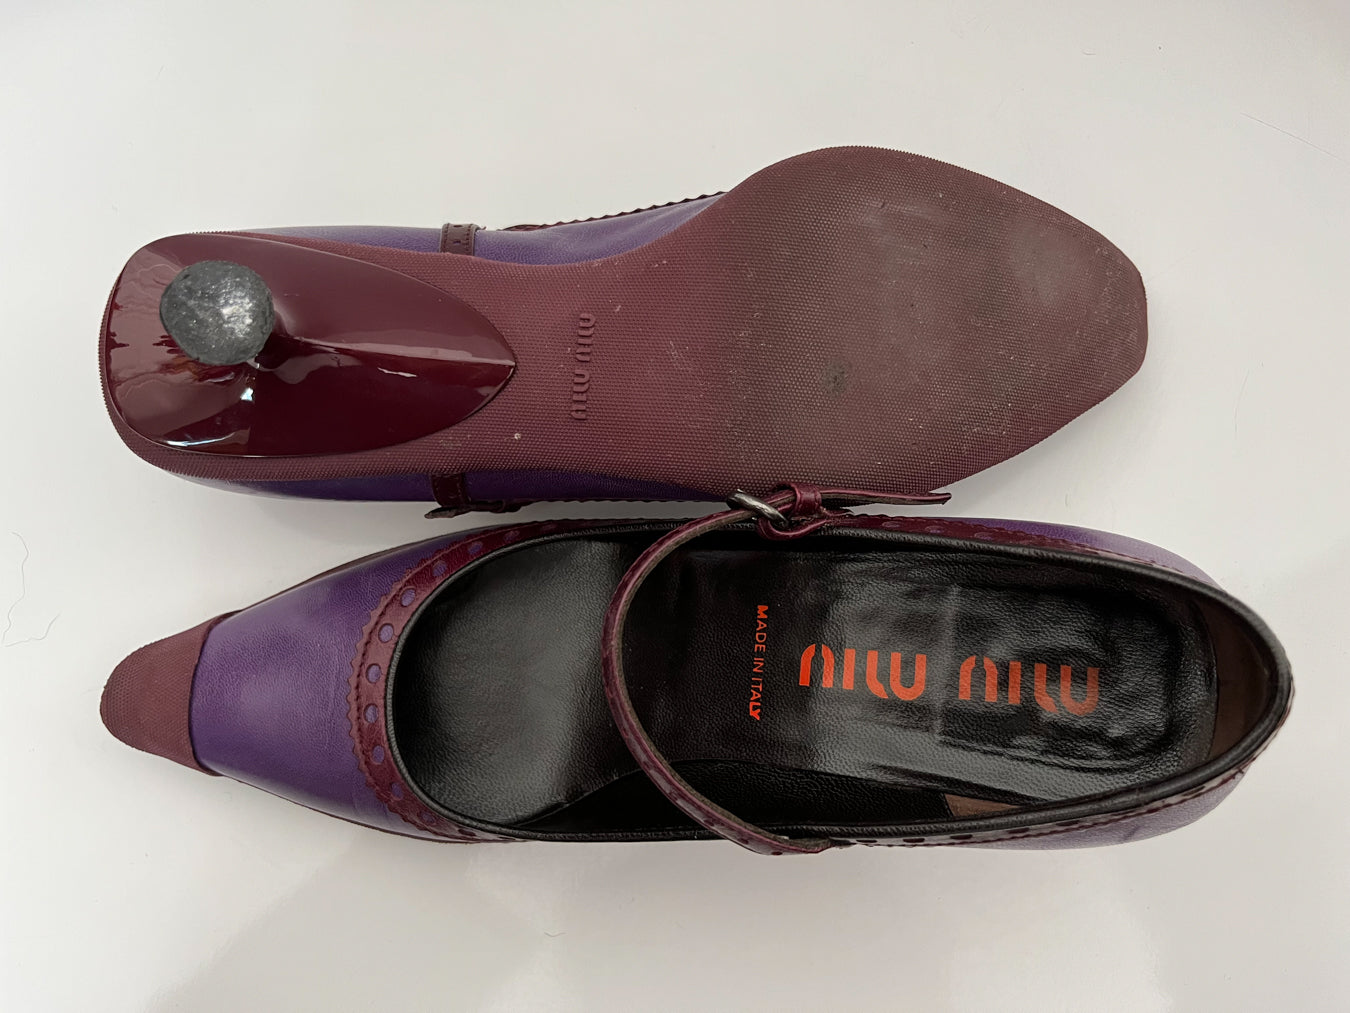 Miu Miu - Rare early 2000s Purple Spool Heel